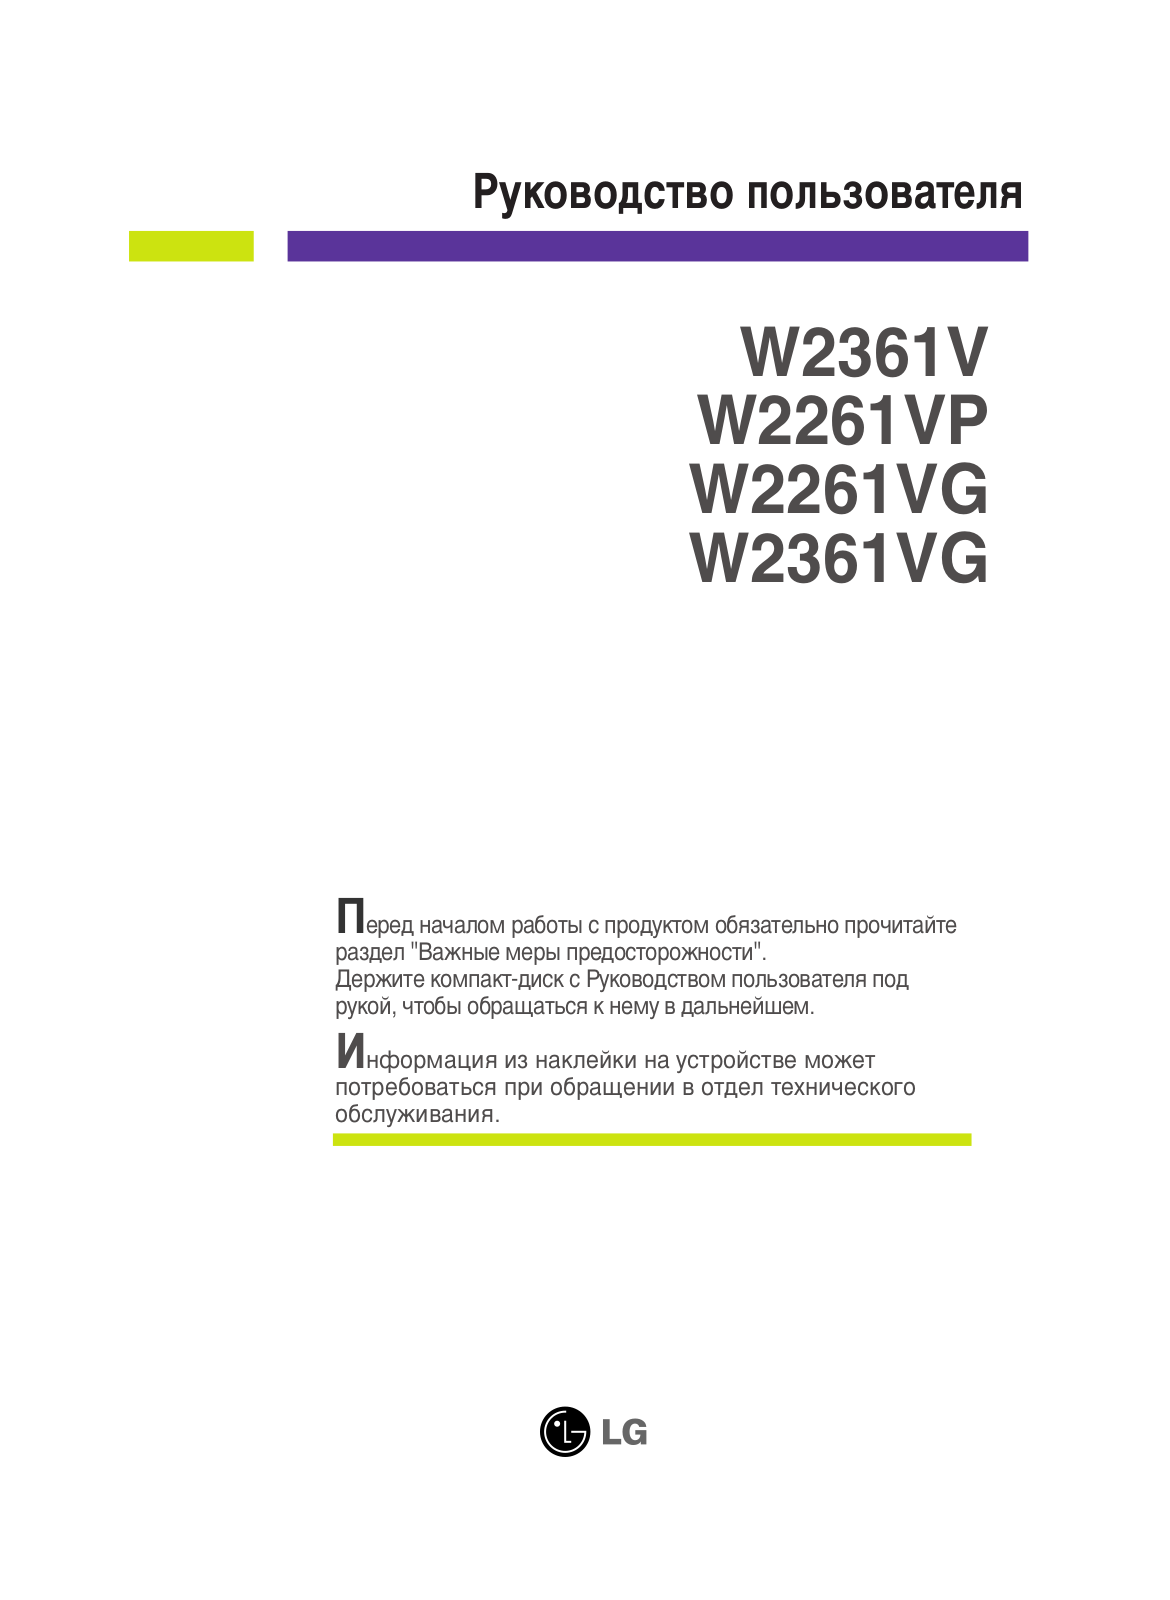 LG W2261VP-PF User Manual